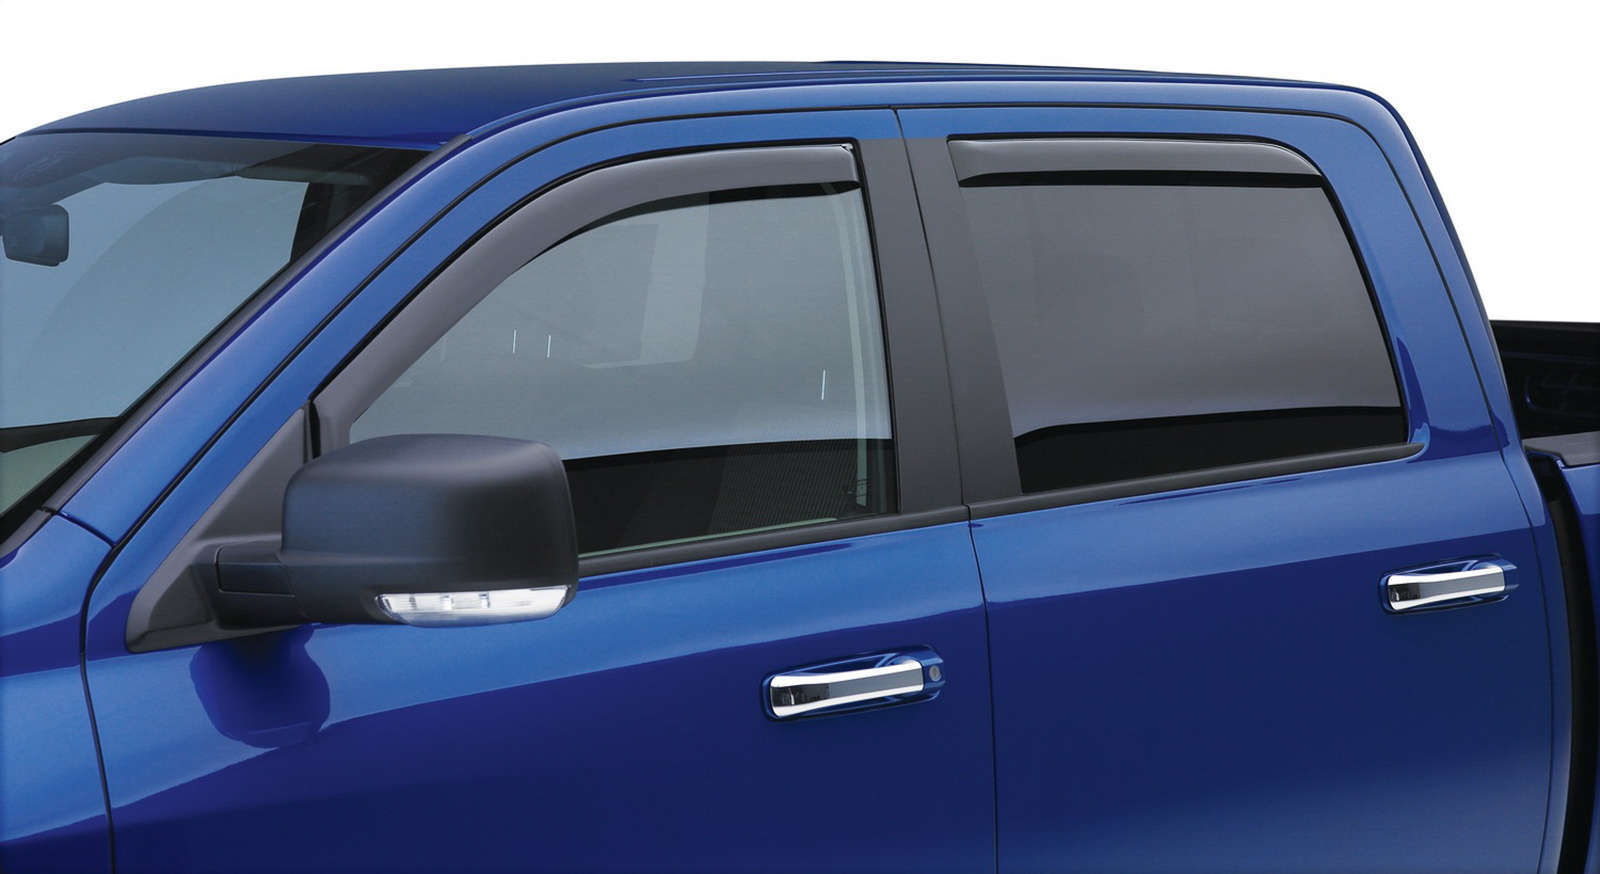 EGR in-channel window visors front & rear set matte black Extended Cab 07-13 Chevrolet Silverado & GMC Sierra 1500, 2500HD, 3500HD